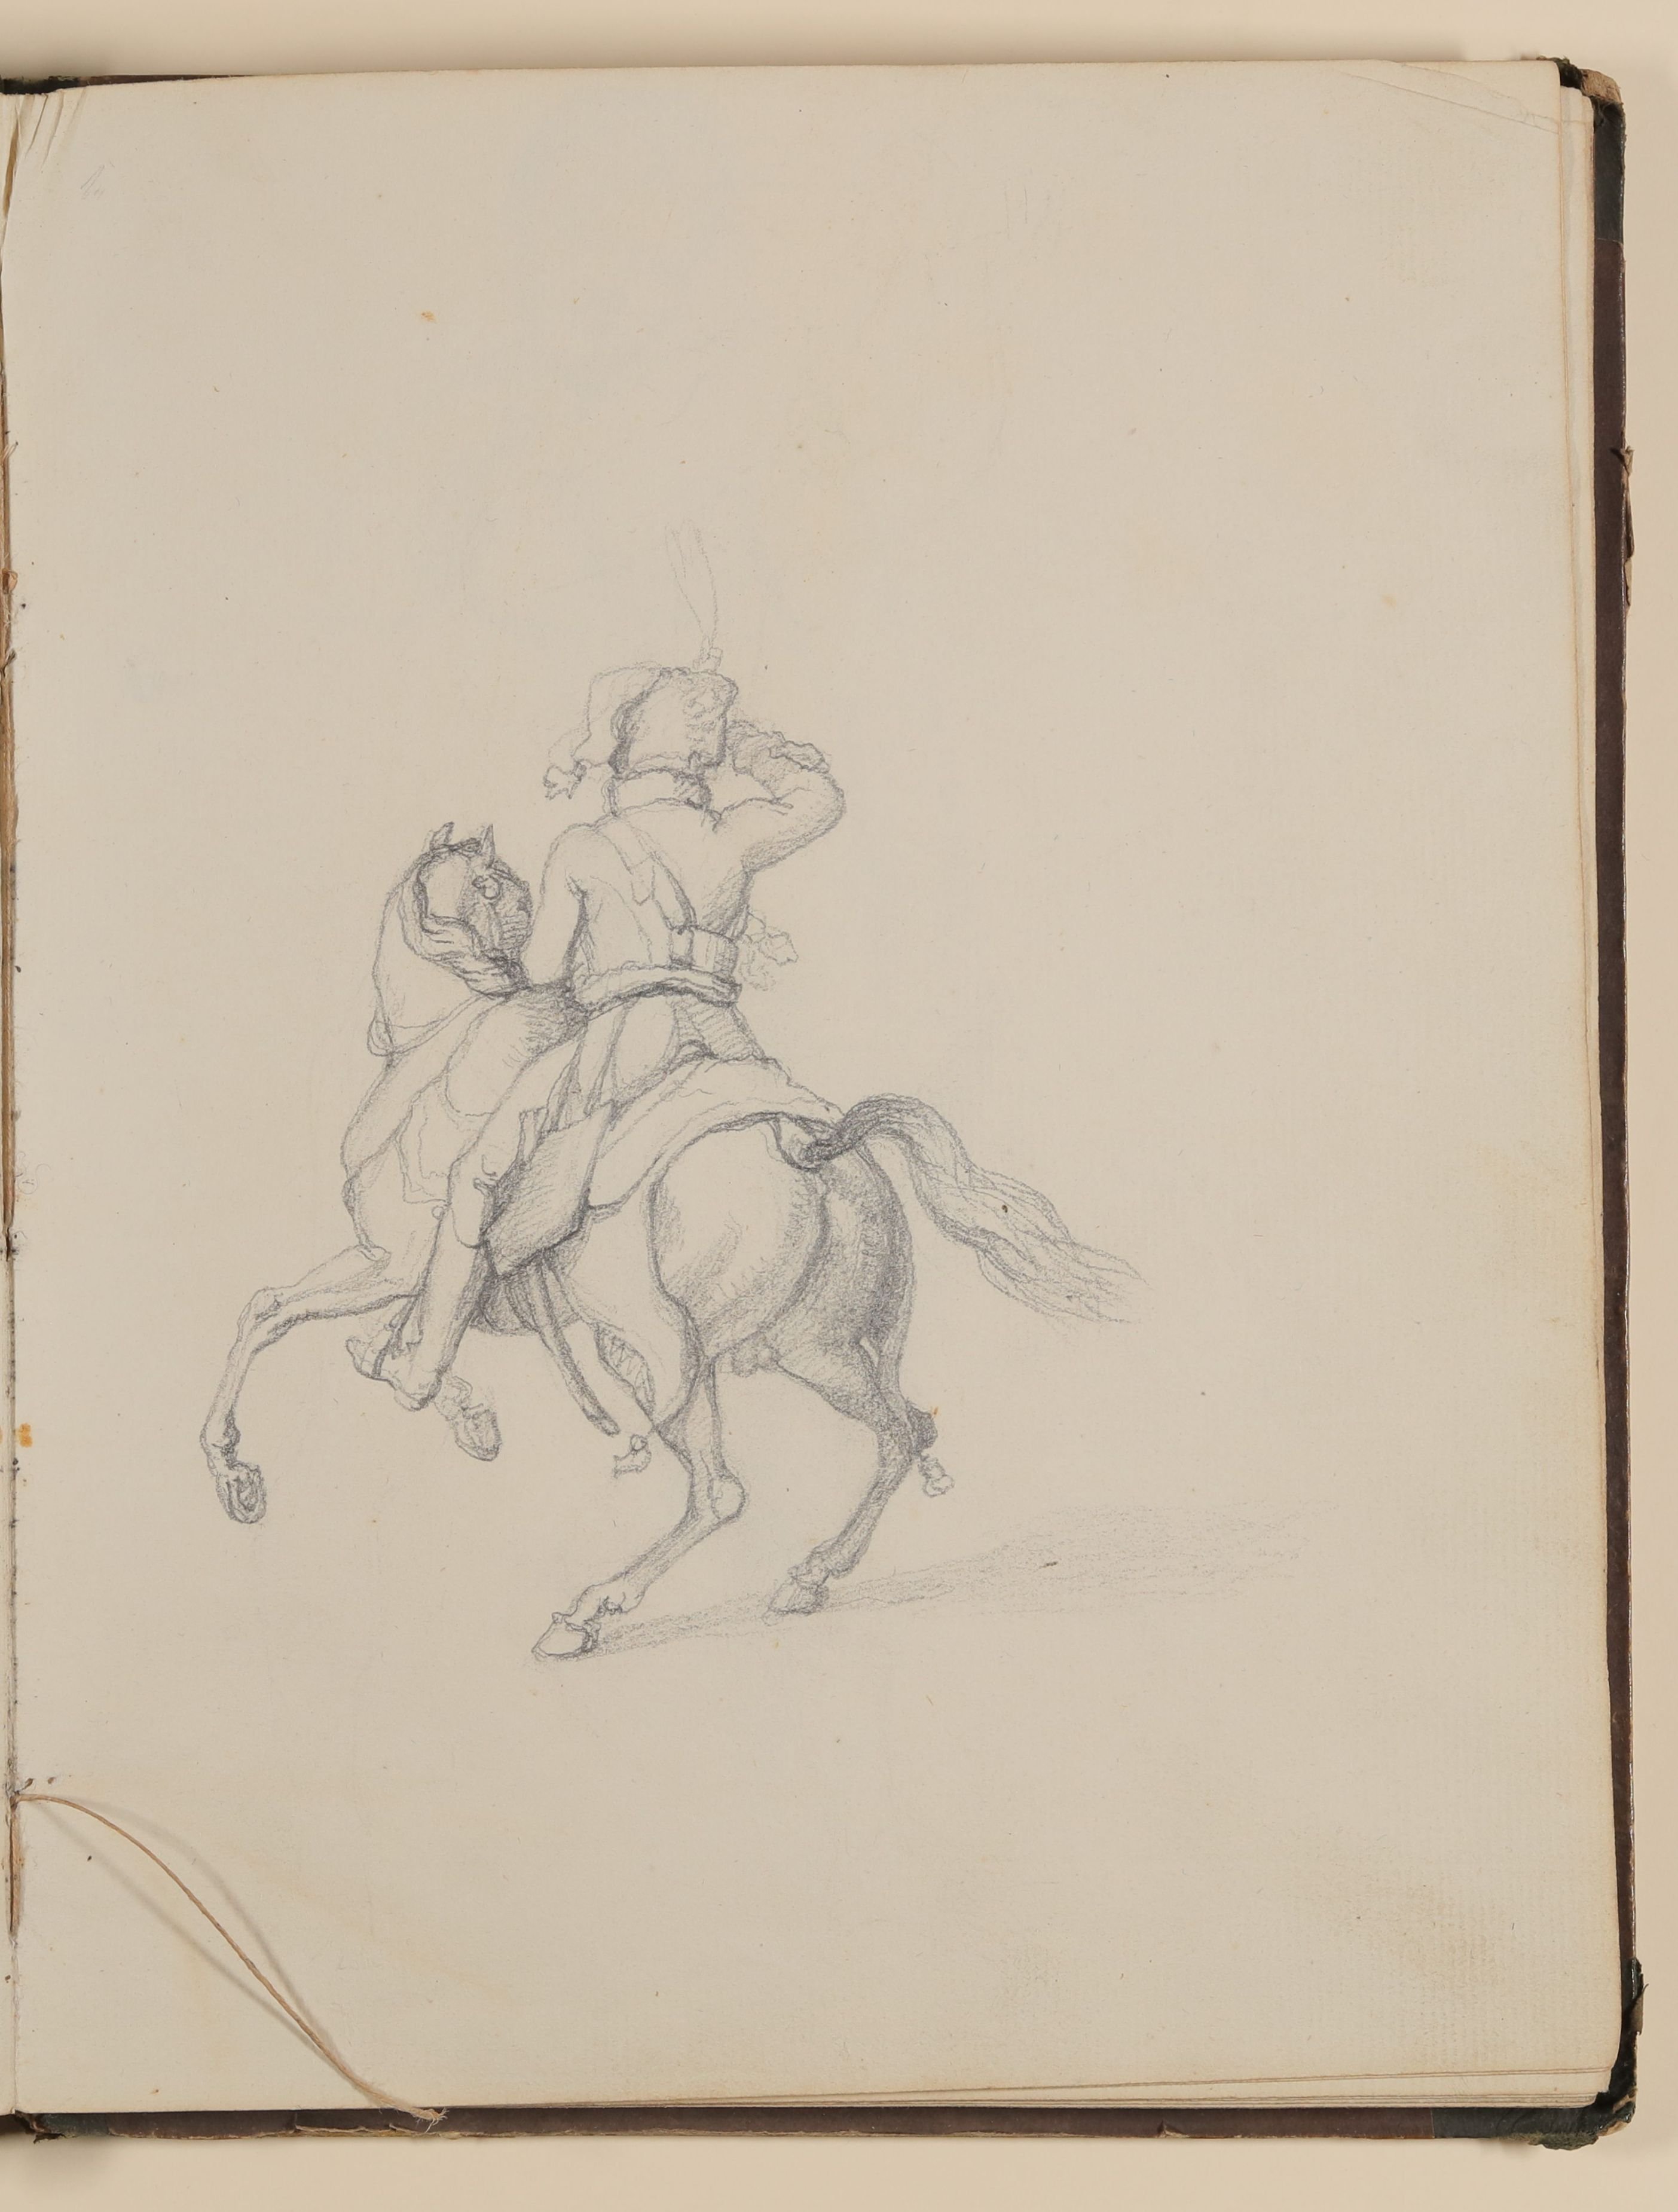 Salutierender Soldat mit Husarenmütze auf seinem Pferd [aus einem Skizzenbuch von unbekannter Hand, evtl. des Louis Thomassin] (Freies Deutsches Hochstift / Frankfurter Goethe-Museum CC BY-NC-SA)